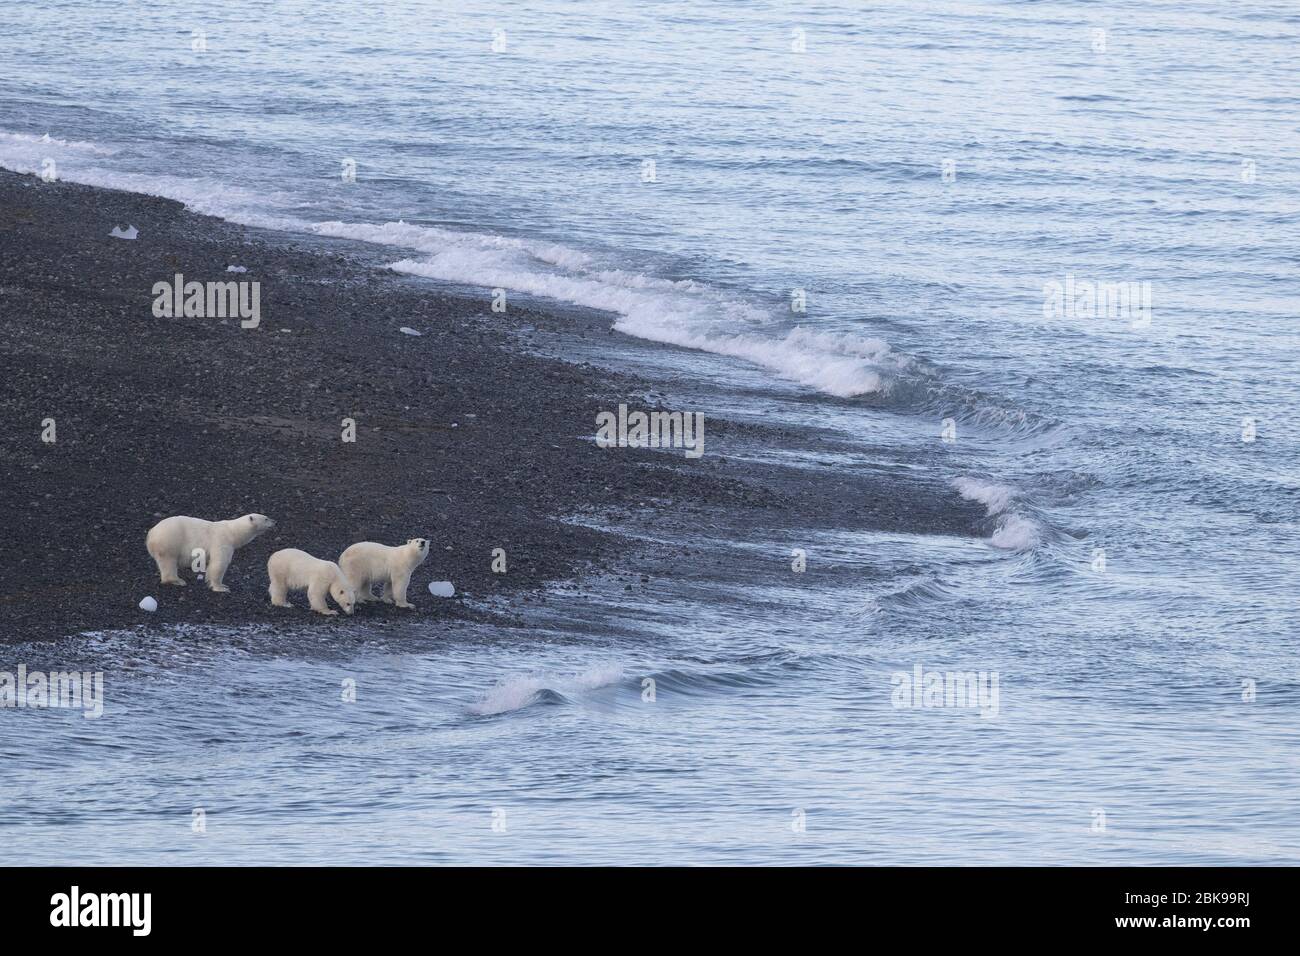 Famille des ours polaires au bord de l'eau, Canada Banque D'Images